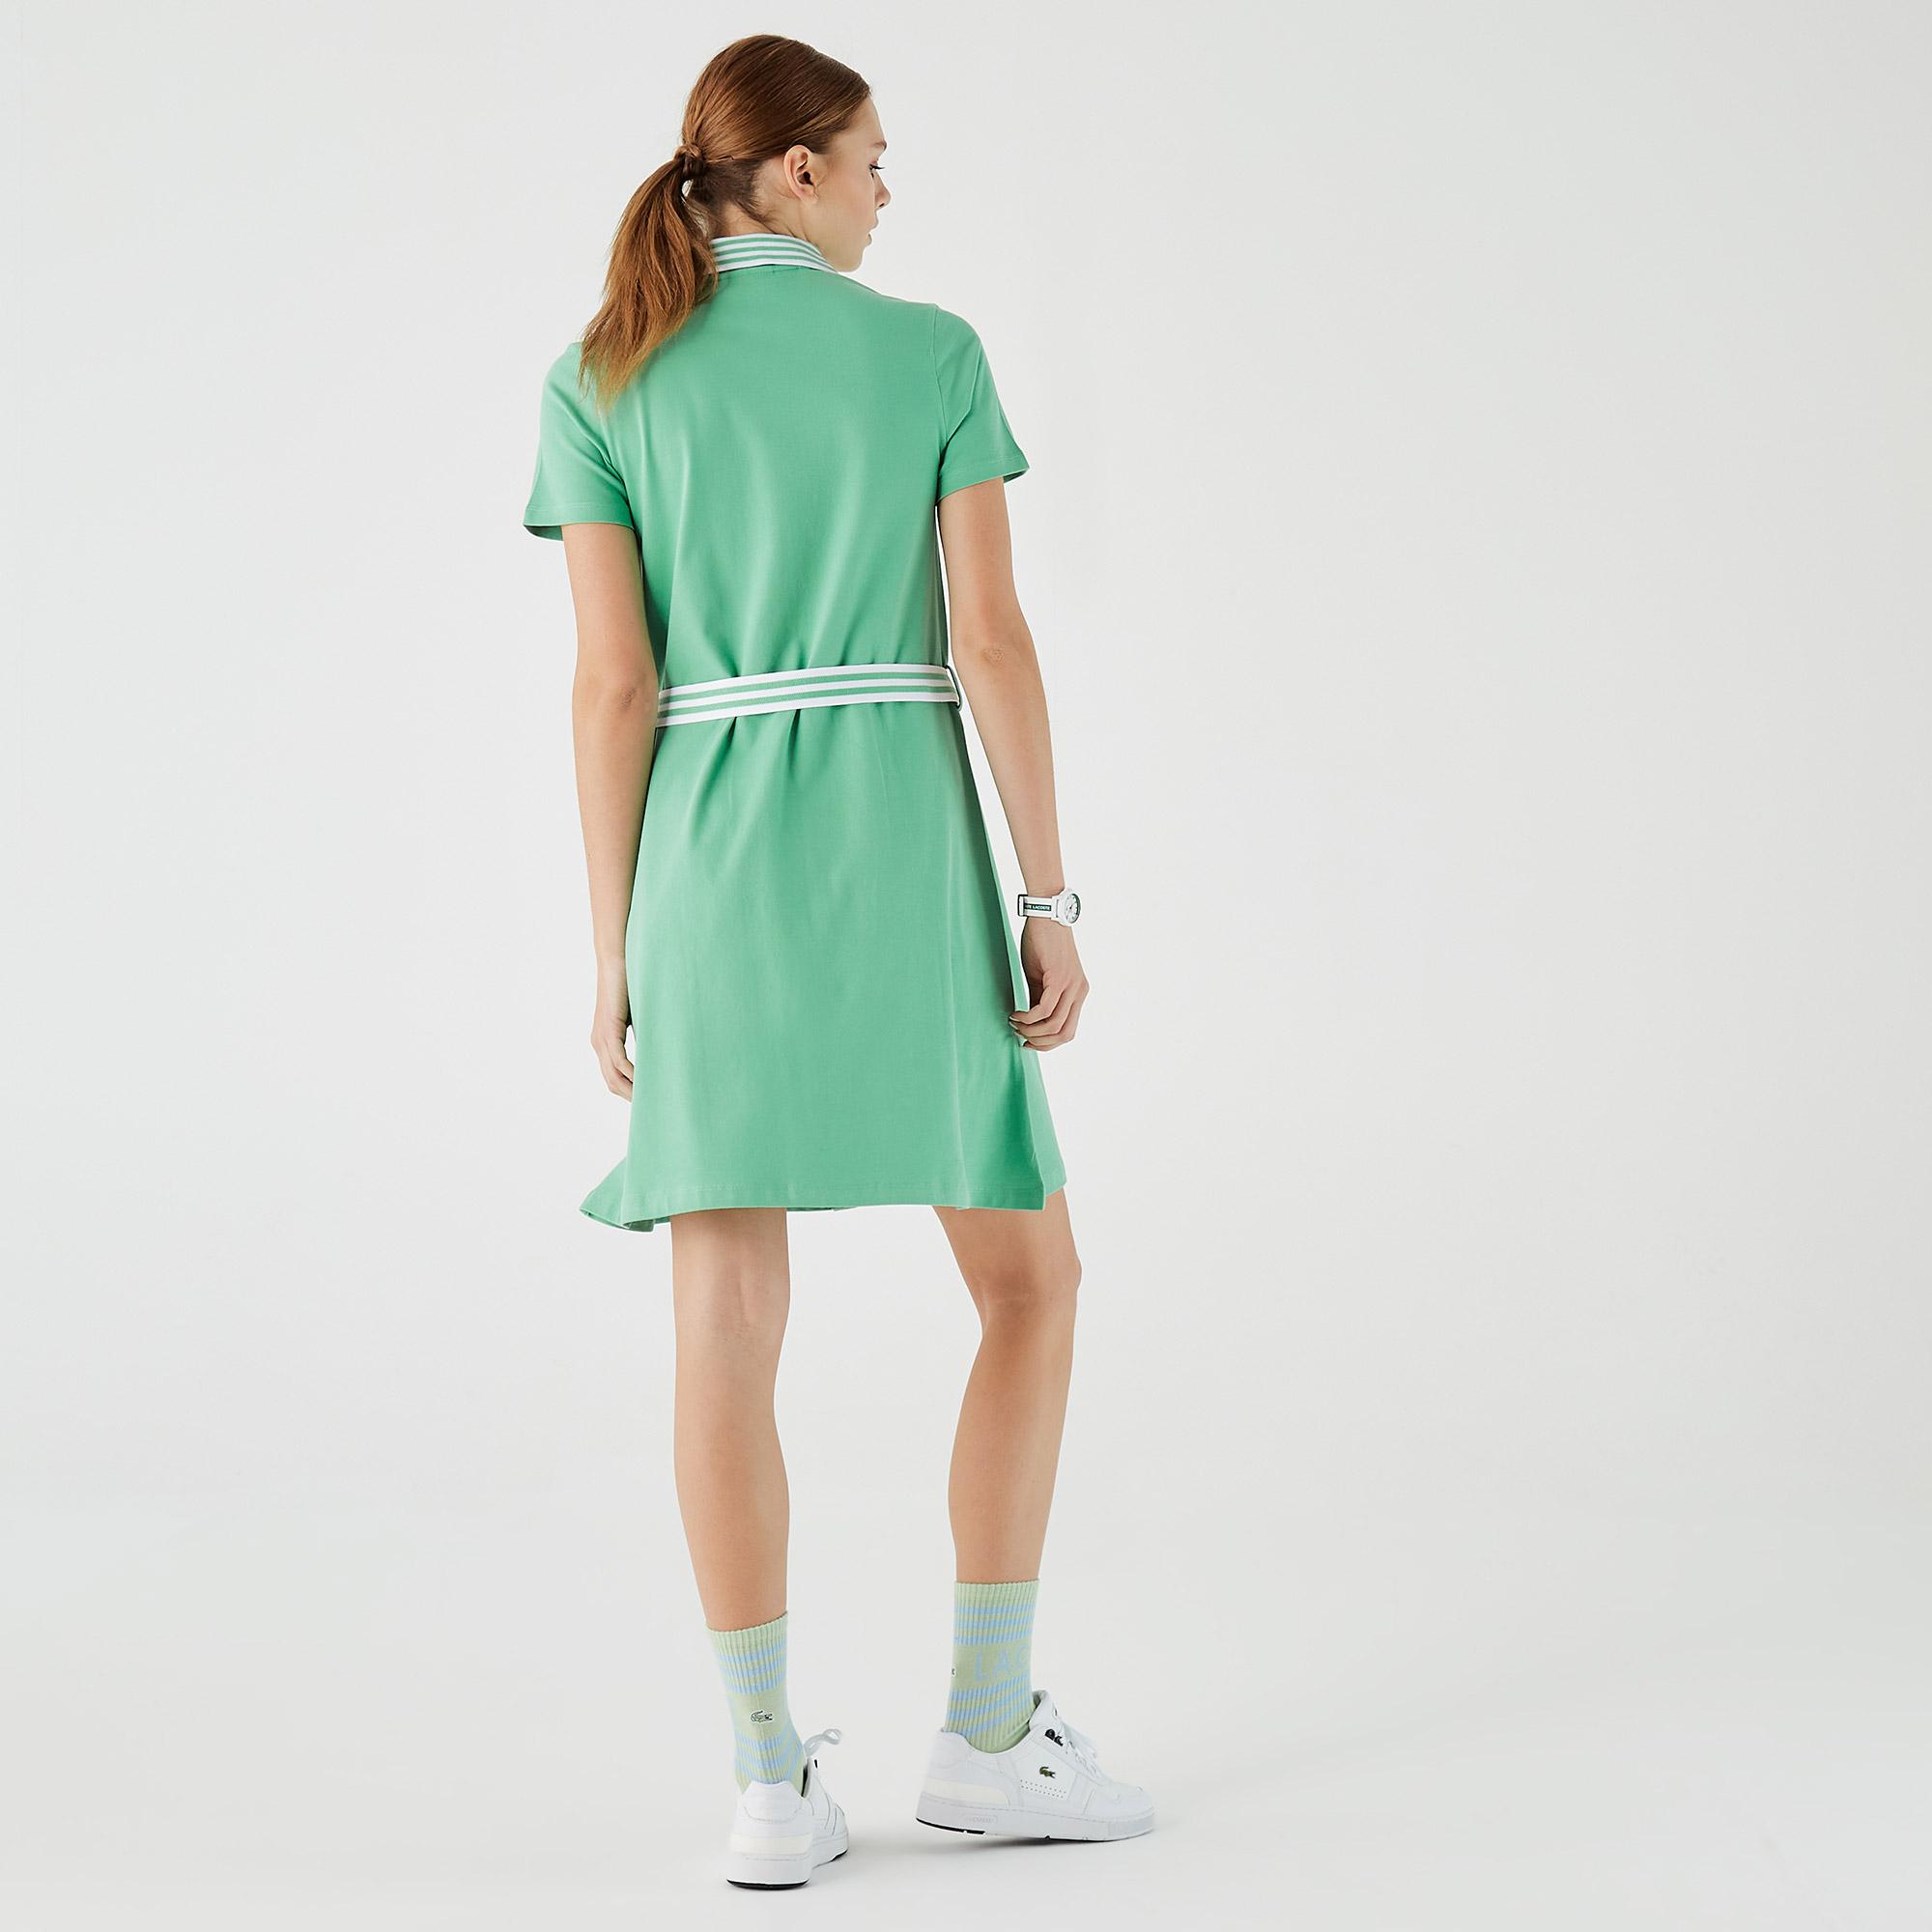 Lacoste Kadın Loose Fit Kısa Kollu Gömlek Yaka Yeşil Elbise. 3